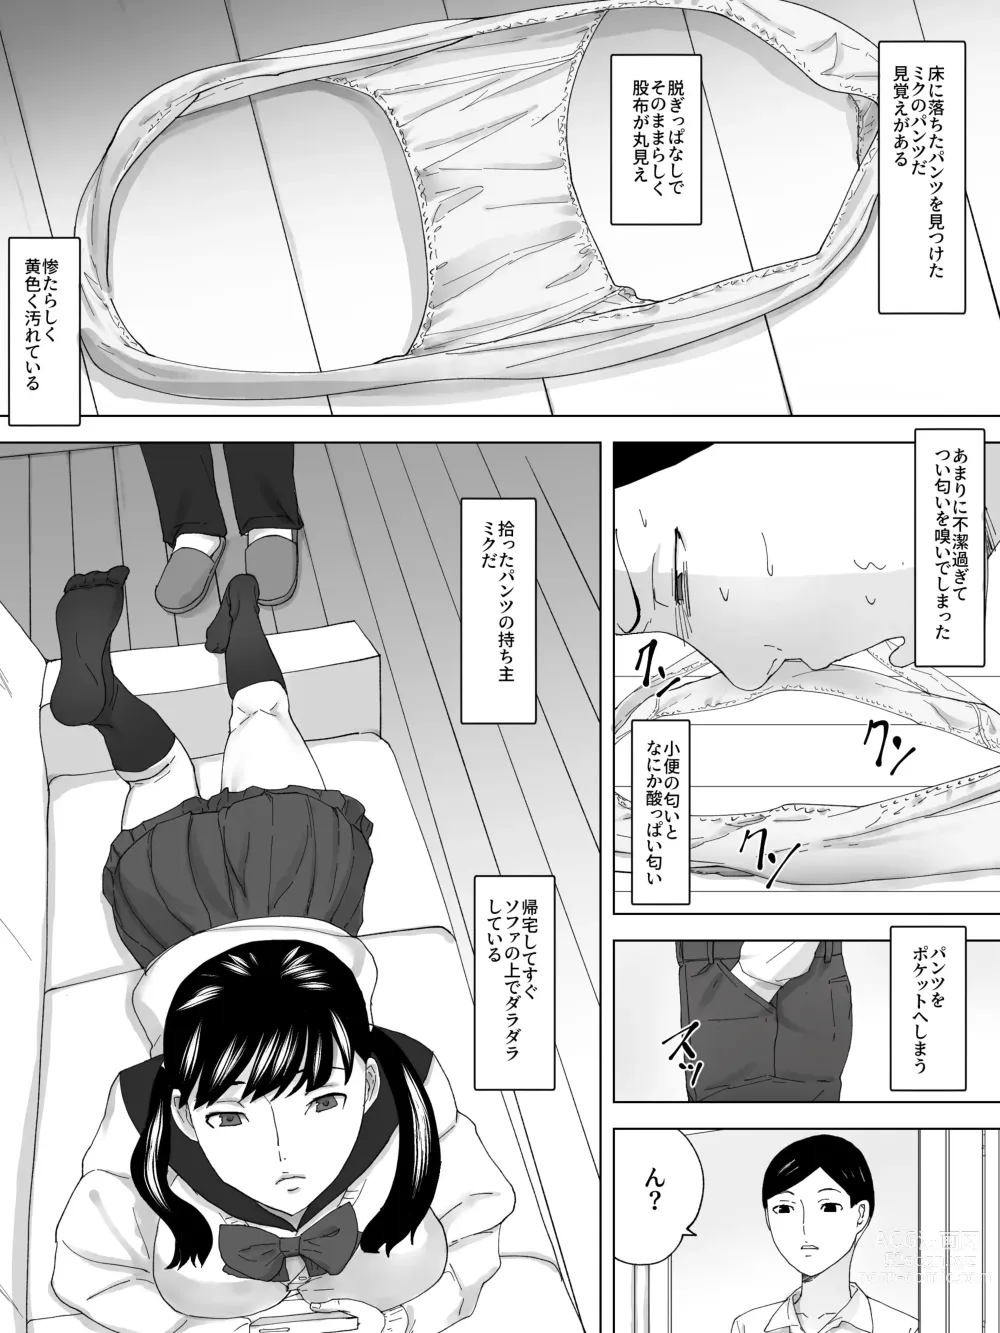 Page 4 of doujinshi Imouto No Benki ni Naru